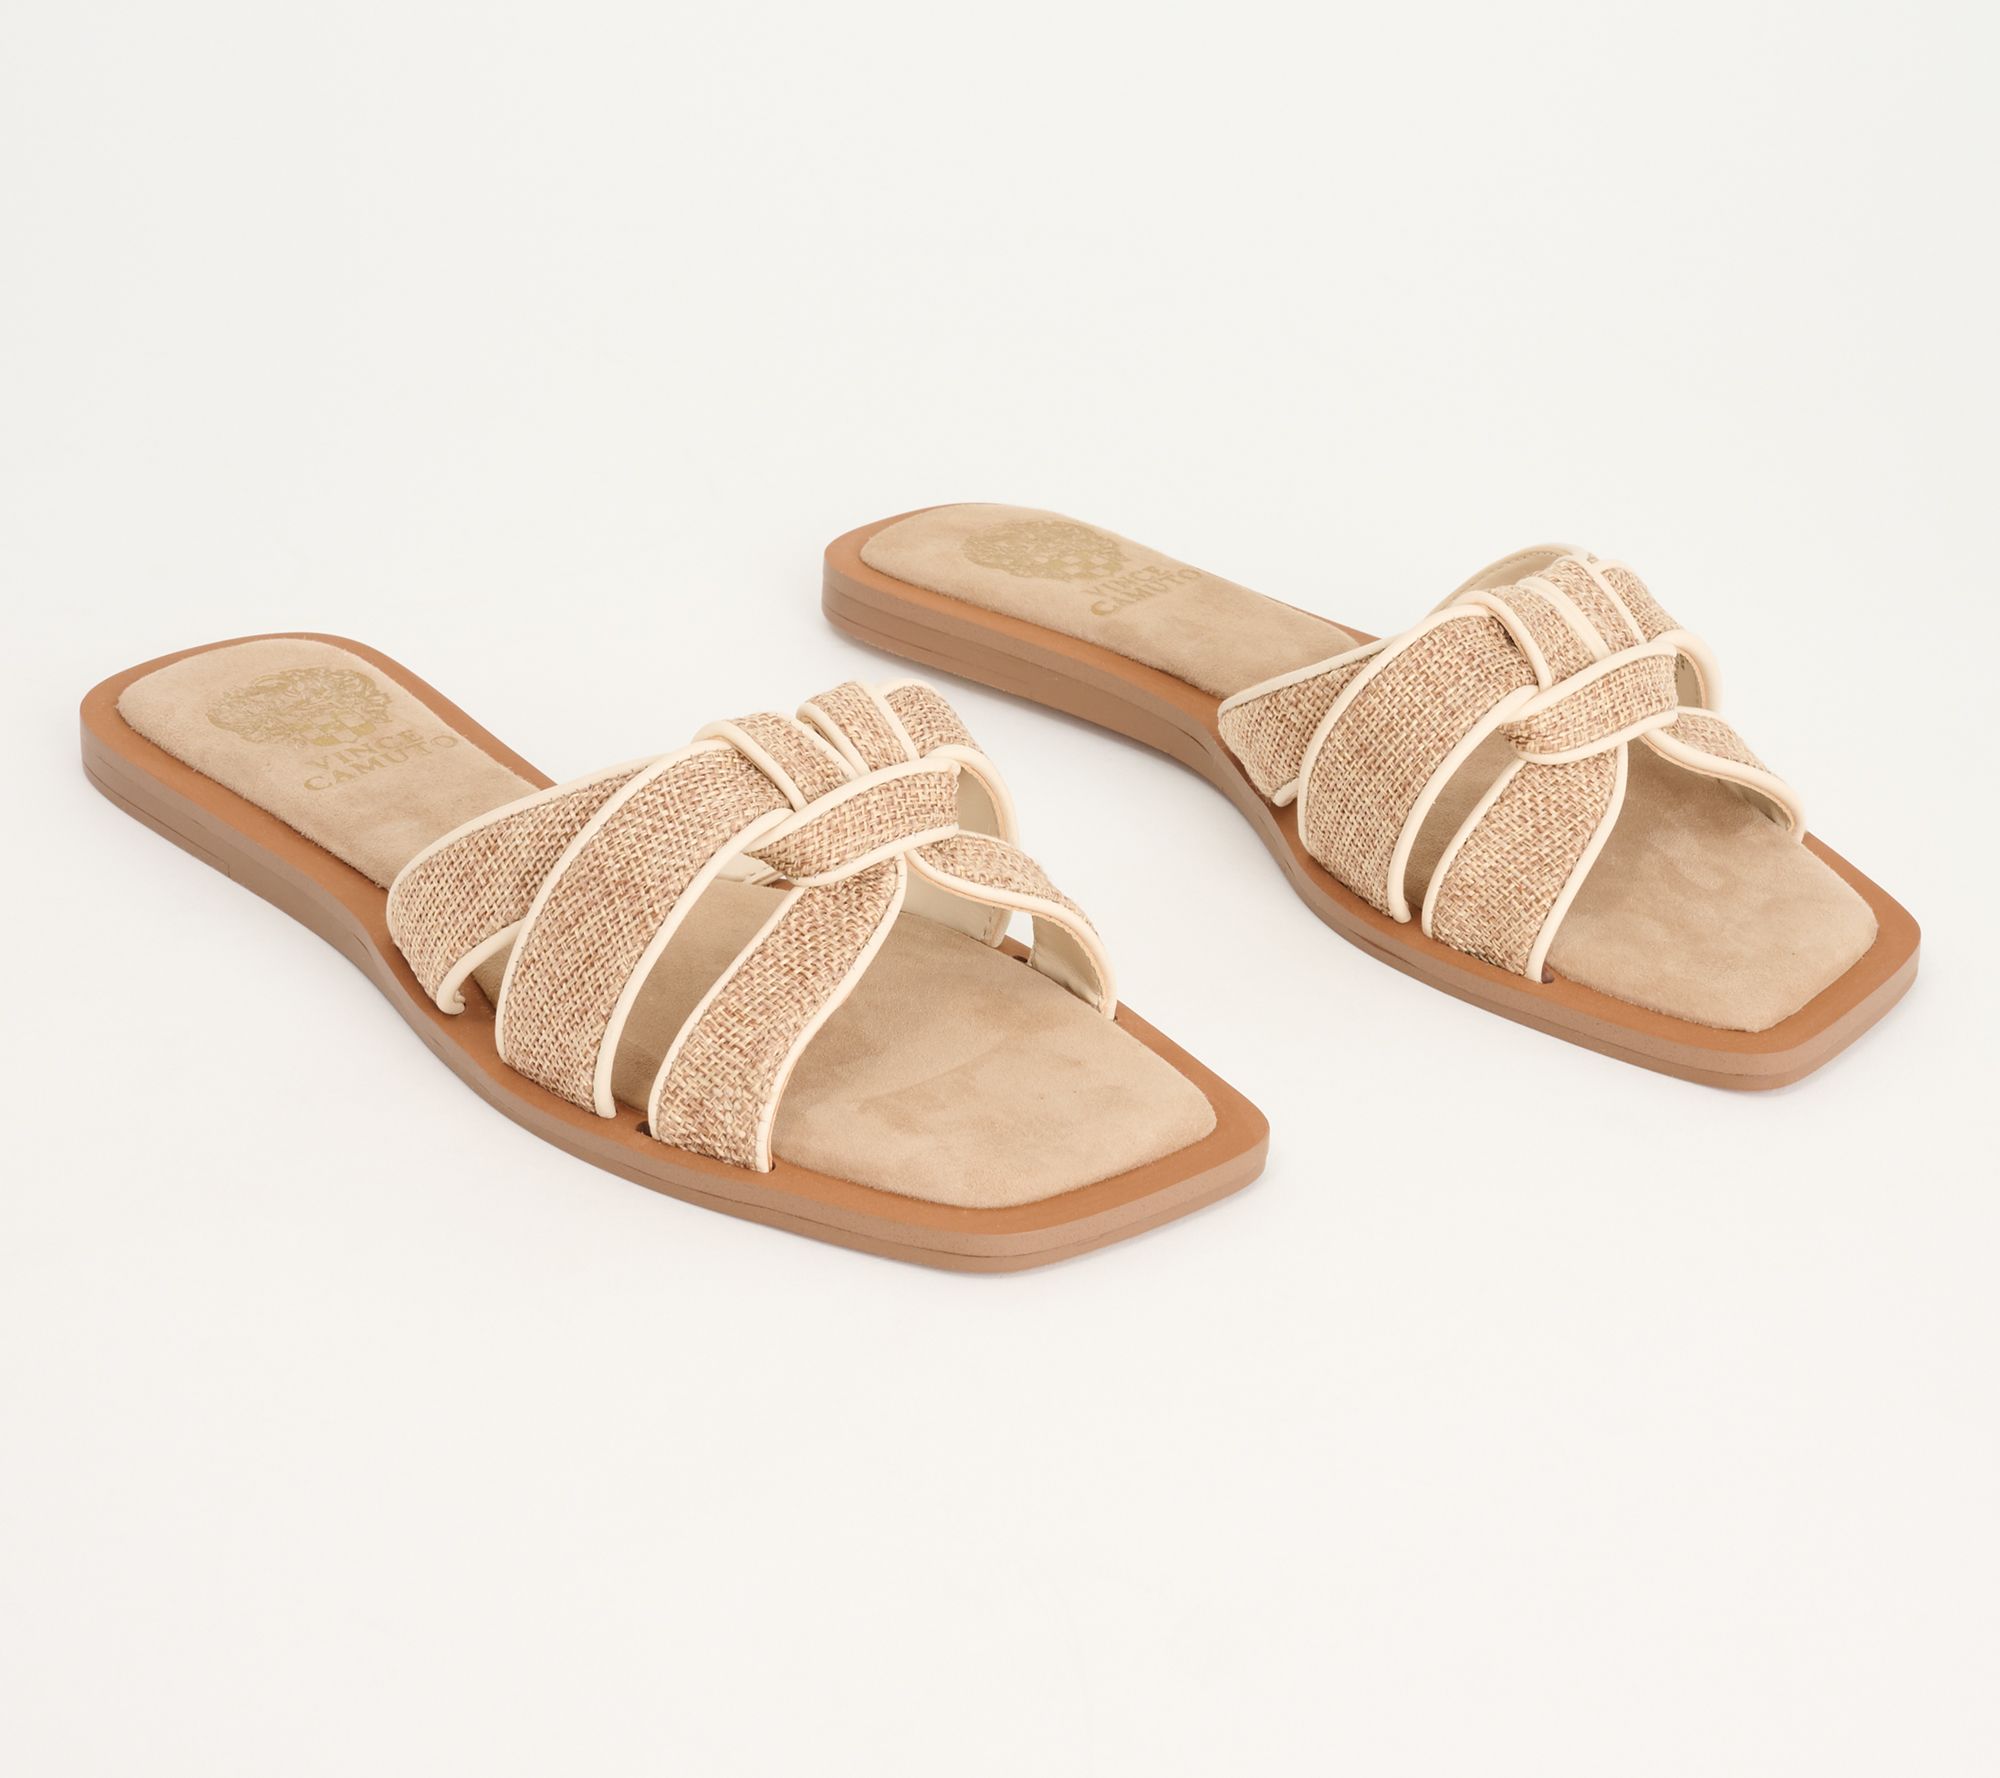 Vince Camuto Leather Slide Sandals - Barcellen 